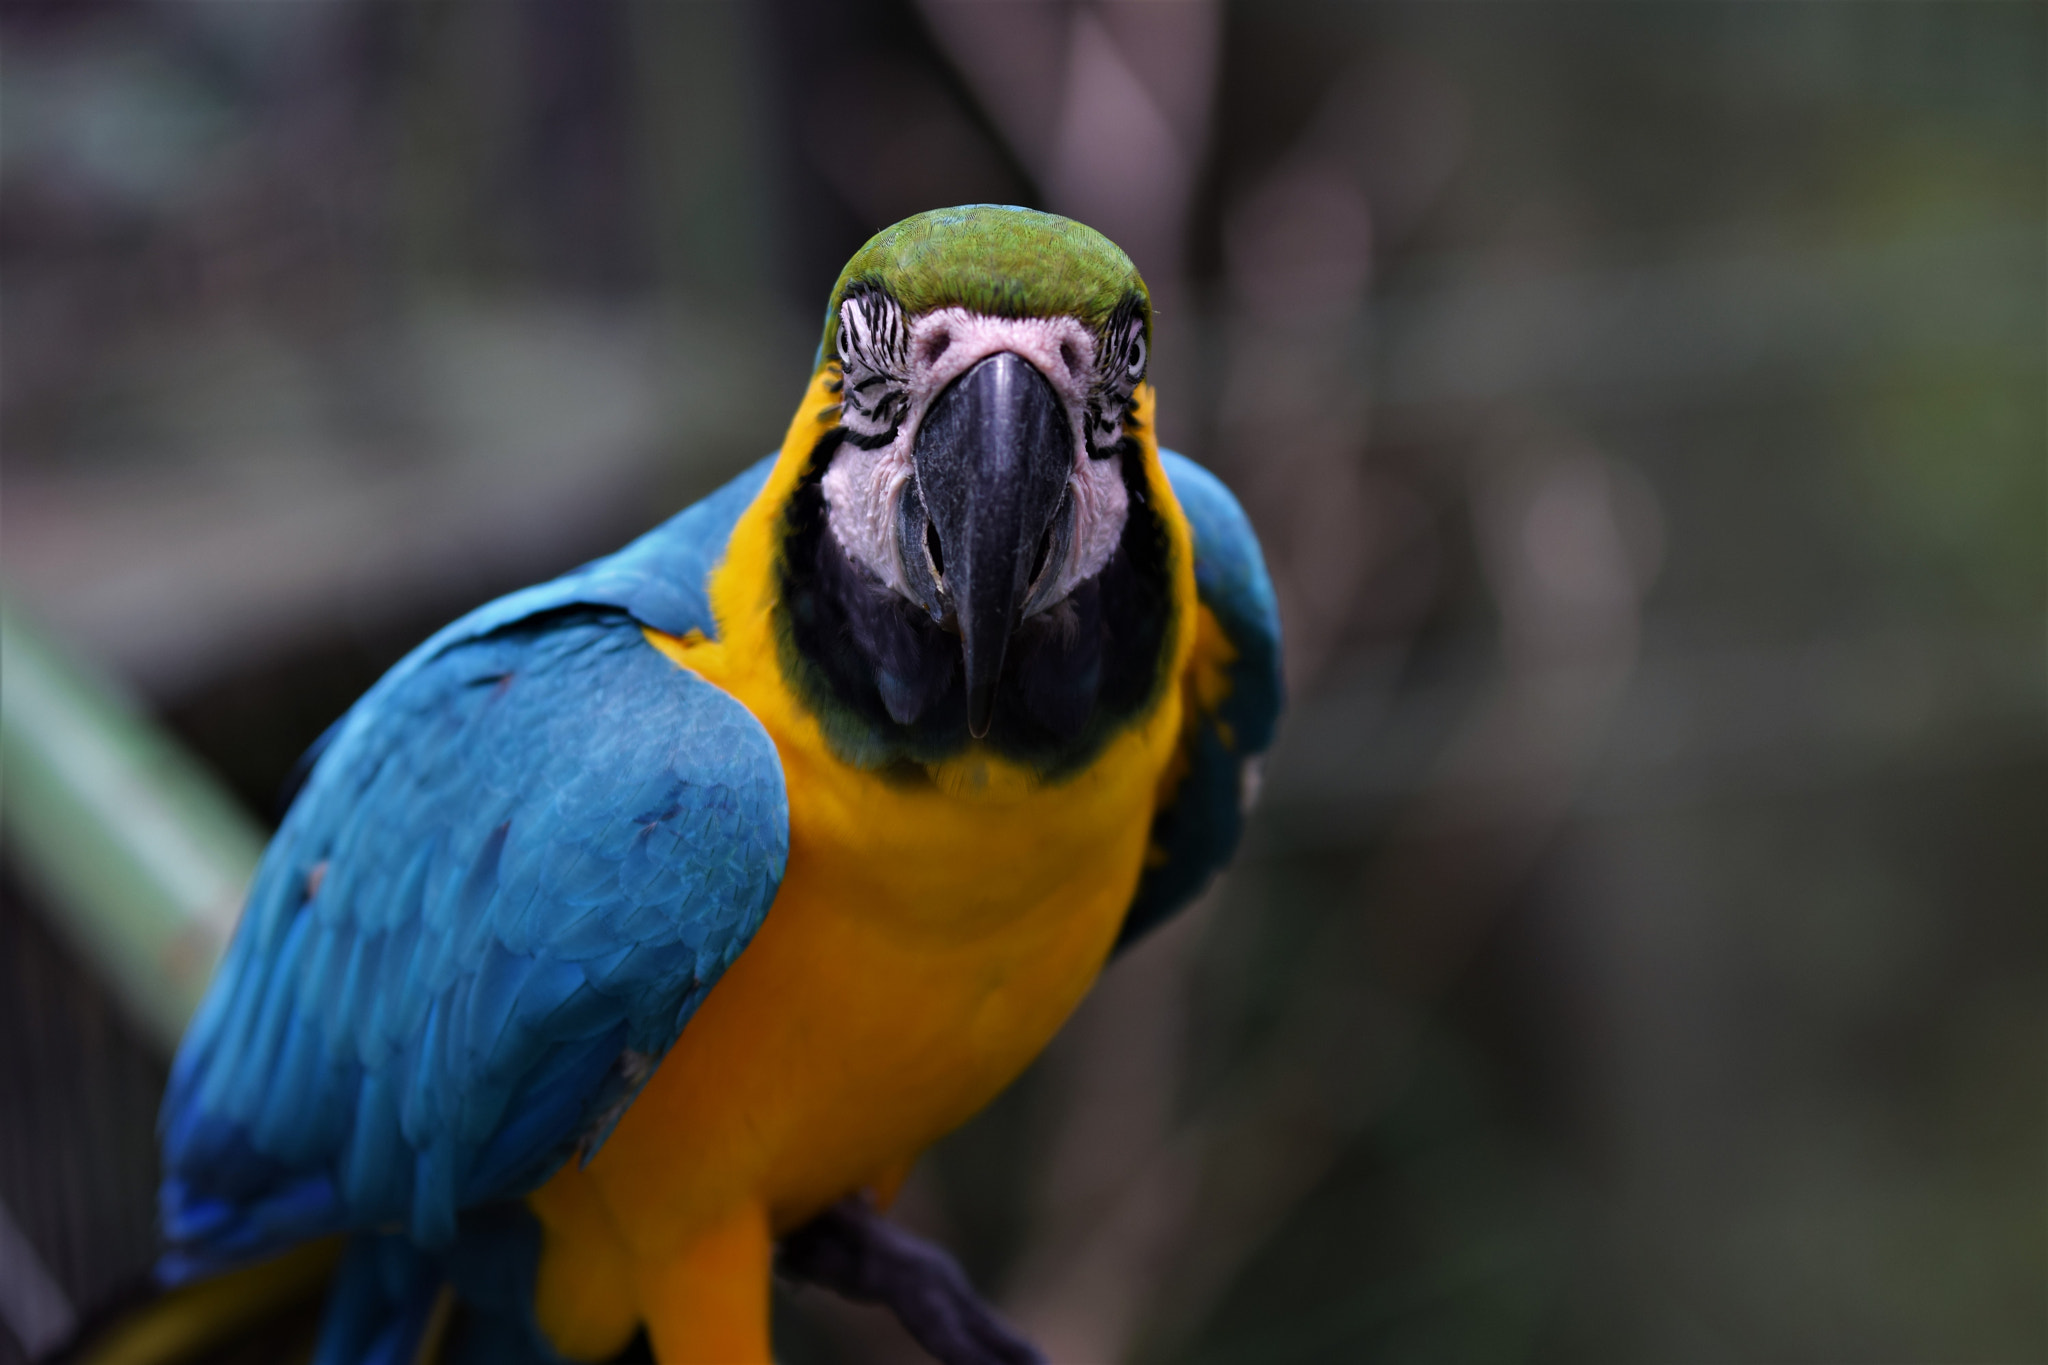 Nikon D3300 sample photo. A beautiful parrot photography